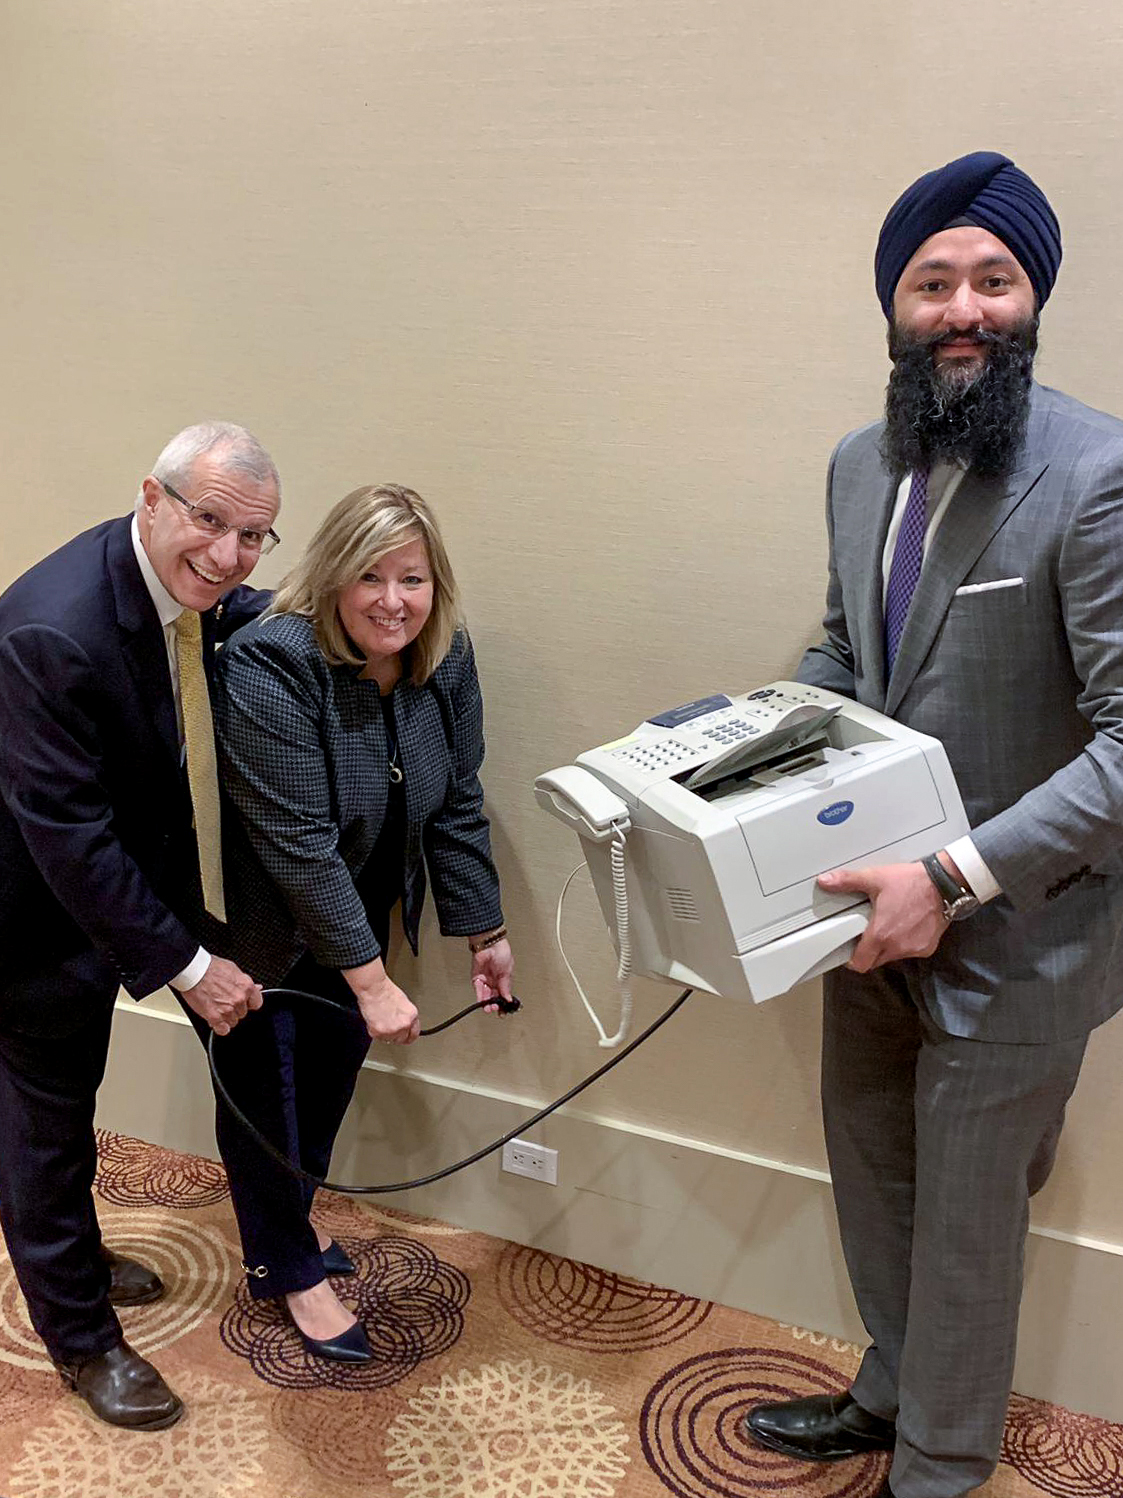 Ontario government aims to “Axe the fax”